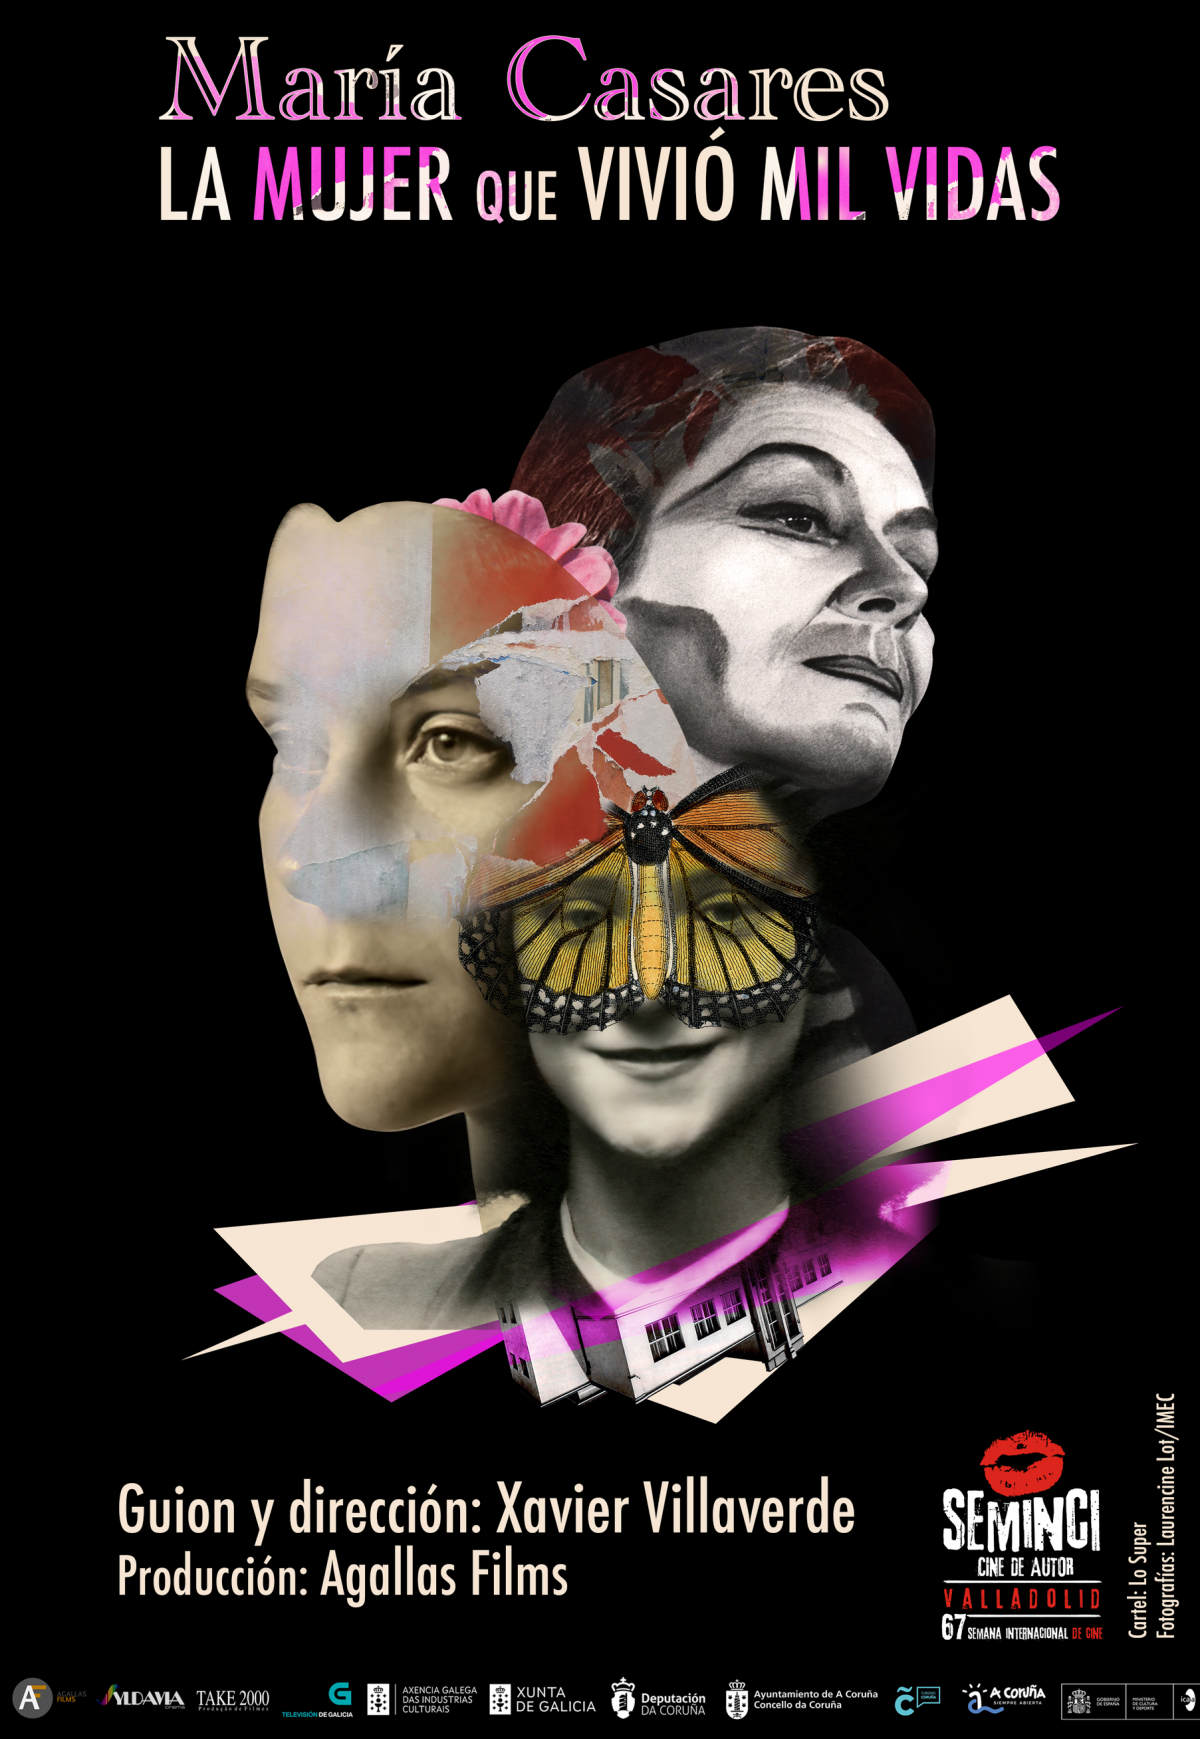 Cartel de la película documental "María Casares. La mujer que vivió mil vidas", de Xavier Villaverde.